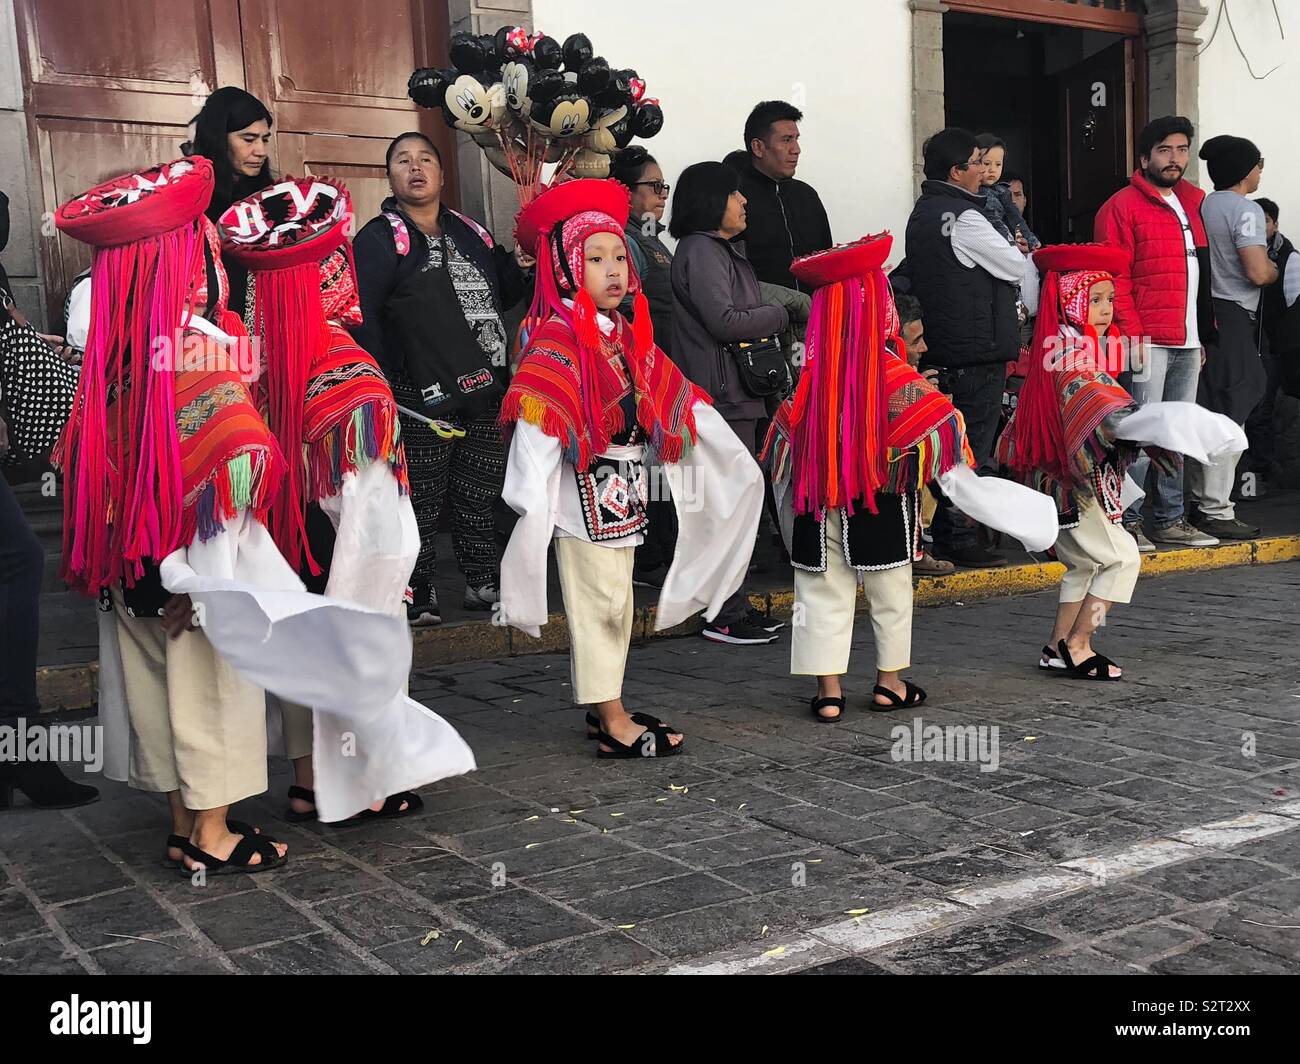 Farbenfroh peruanischen Kinder Vorbereitung für ihre Inti Raymi oder Inti Raymi' rata Sun Festival Parade angezogen. Inka Feier der Wintersonnenwende. Cusco Cuzco Peru Peru. Stockfoto